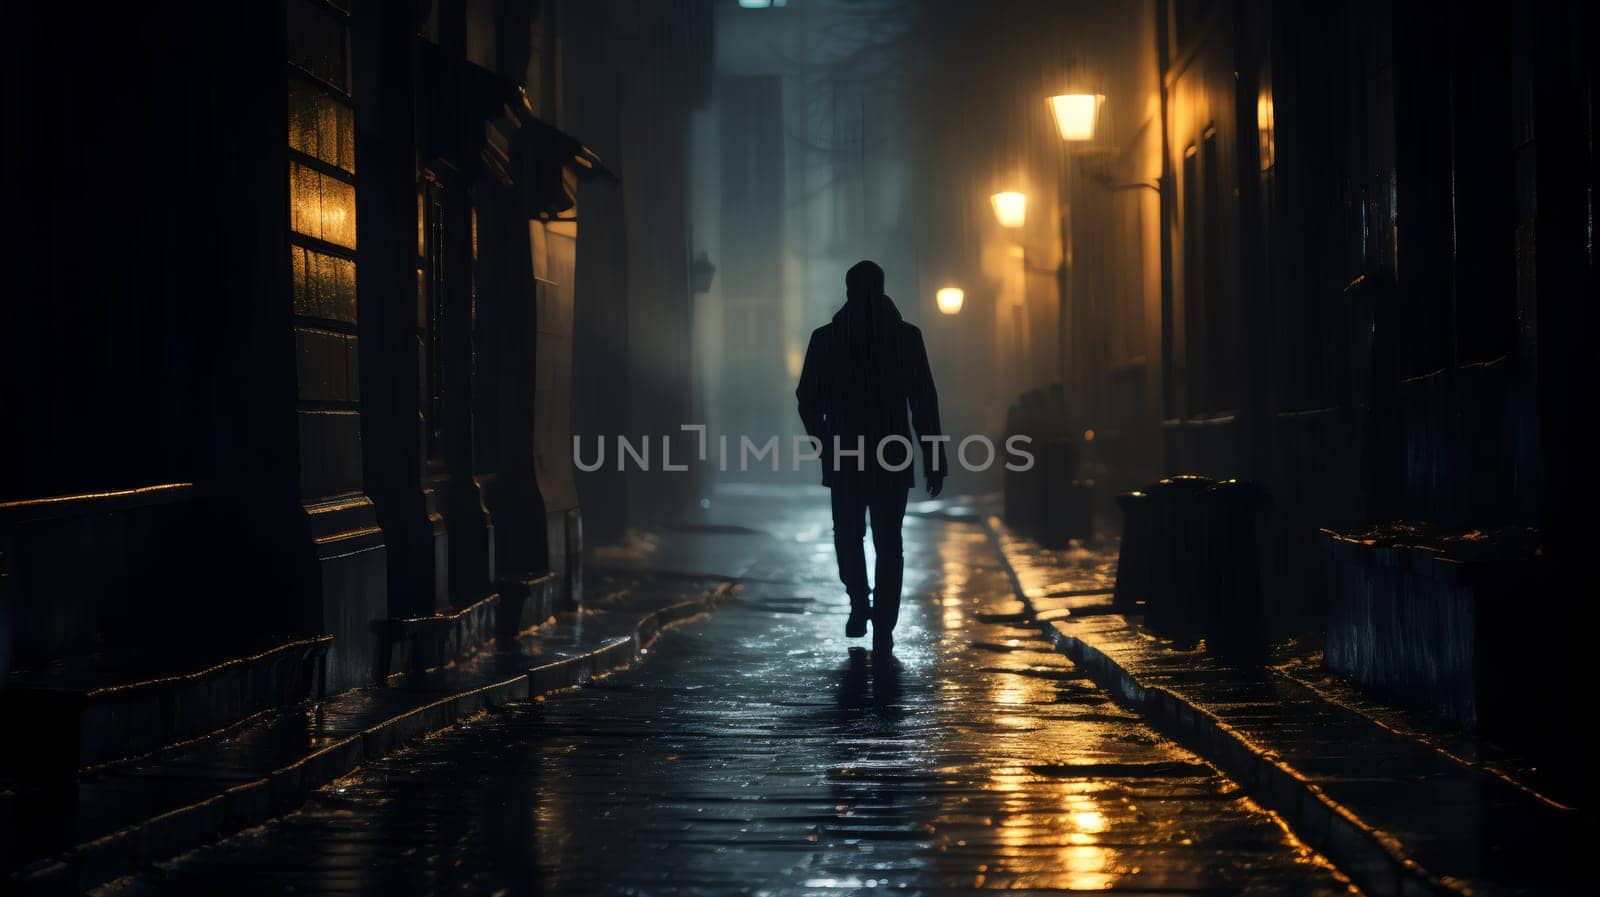 A single figure walks away into the misty glow of a rain-soaked, lamp-lit street by chrisroll